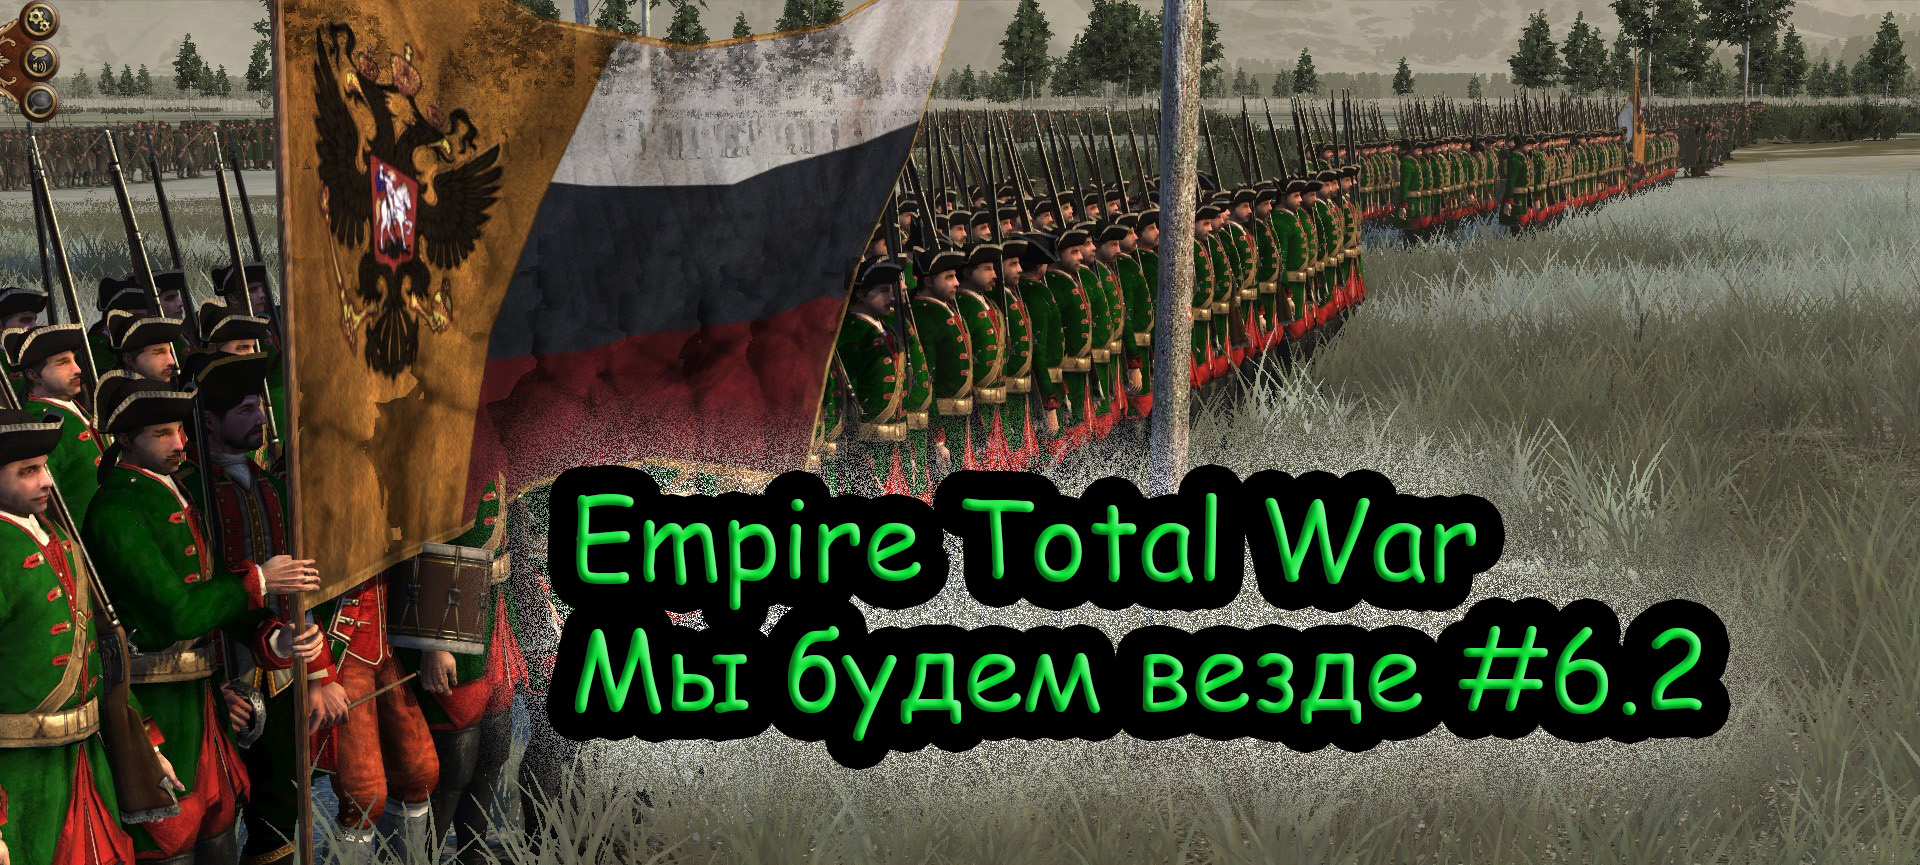 Прохождение Empire Total War за Российскую Империю №6.2